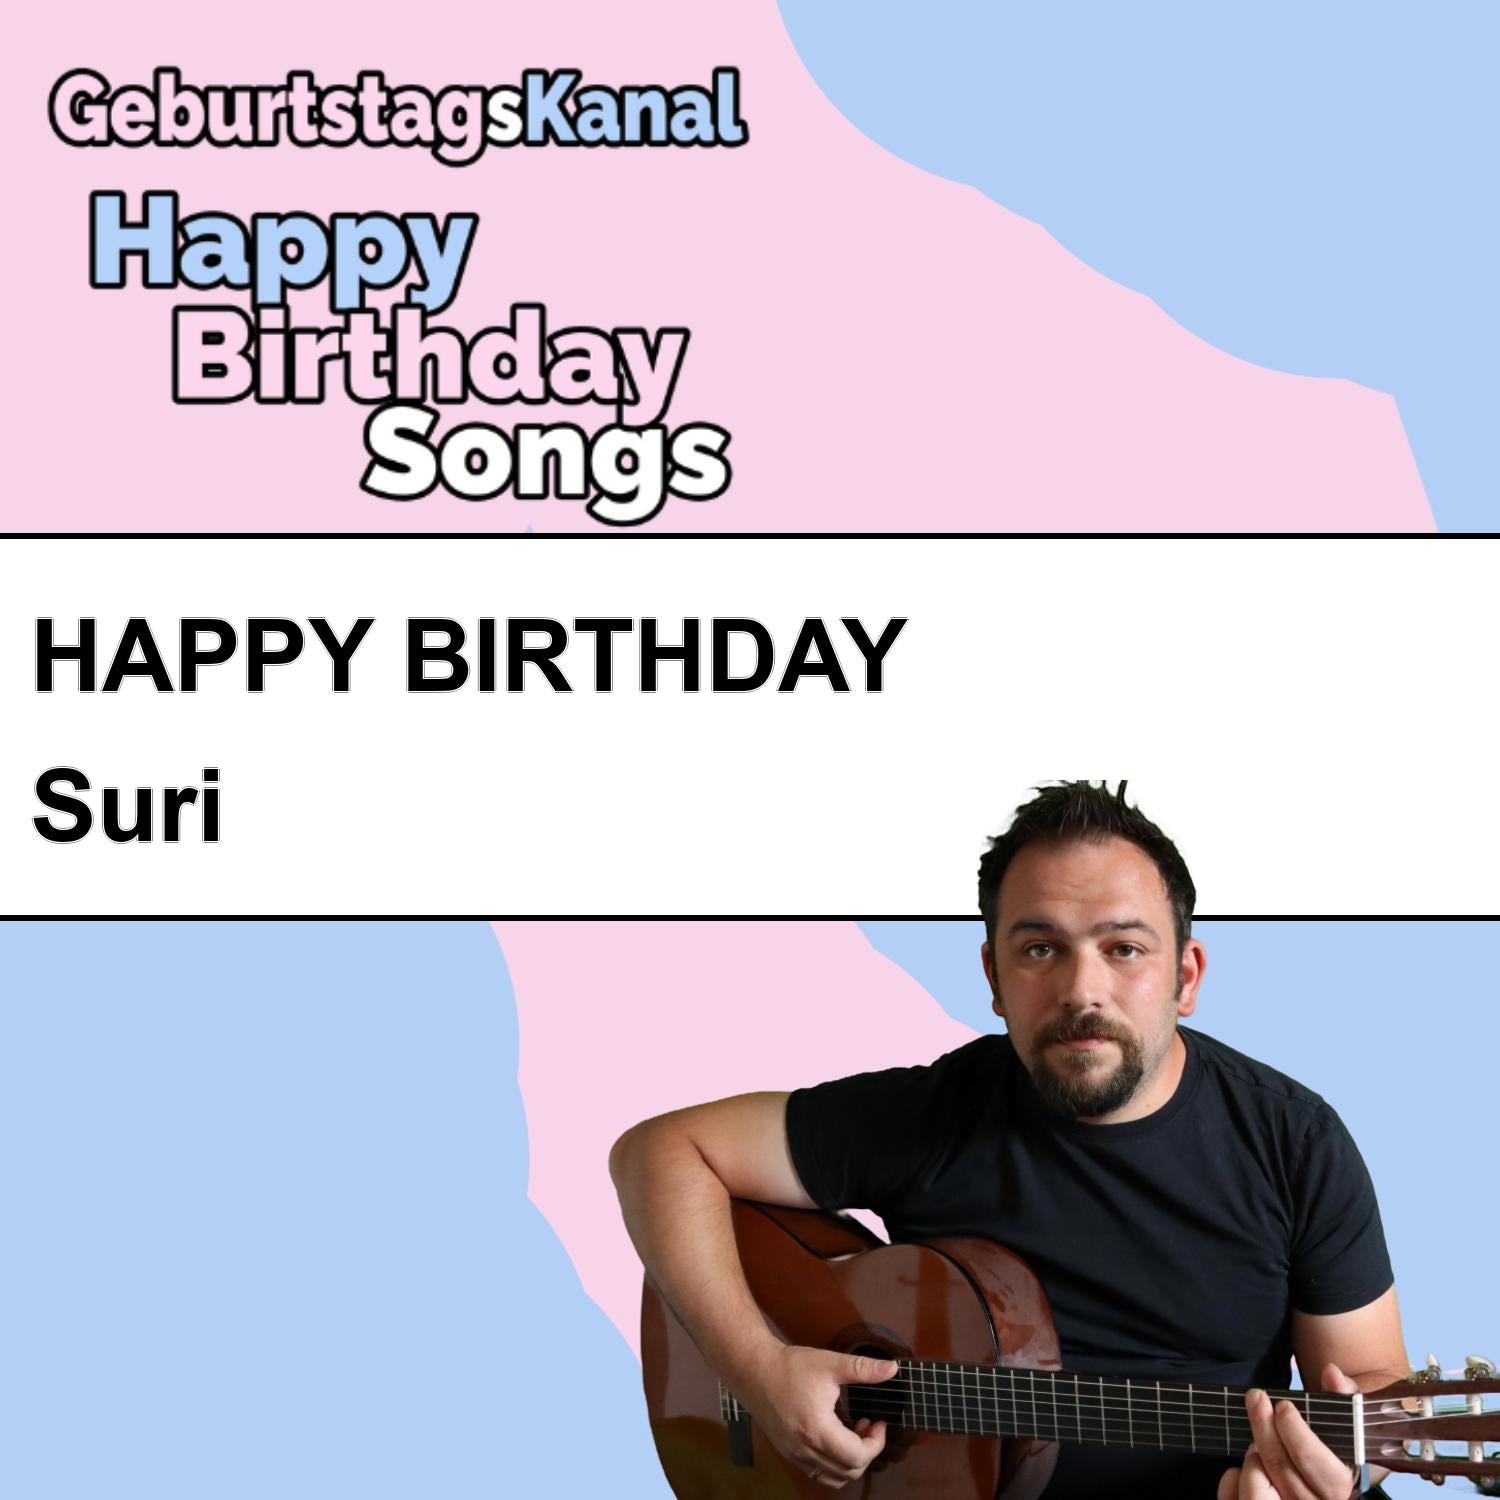 Produktbild Happy Birthday to you Suri mit Wunschgrußbotschaft